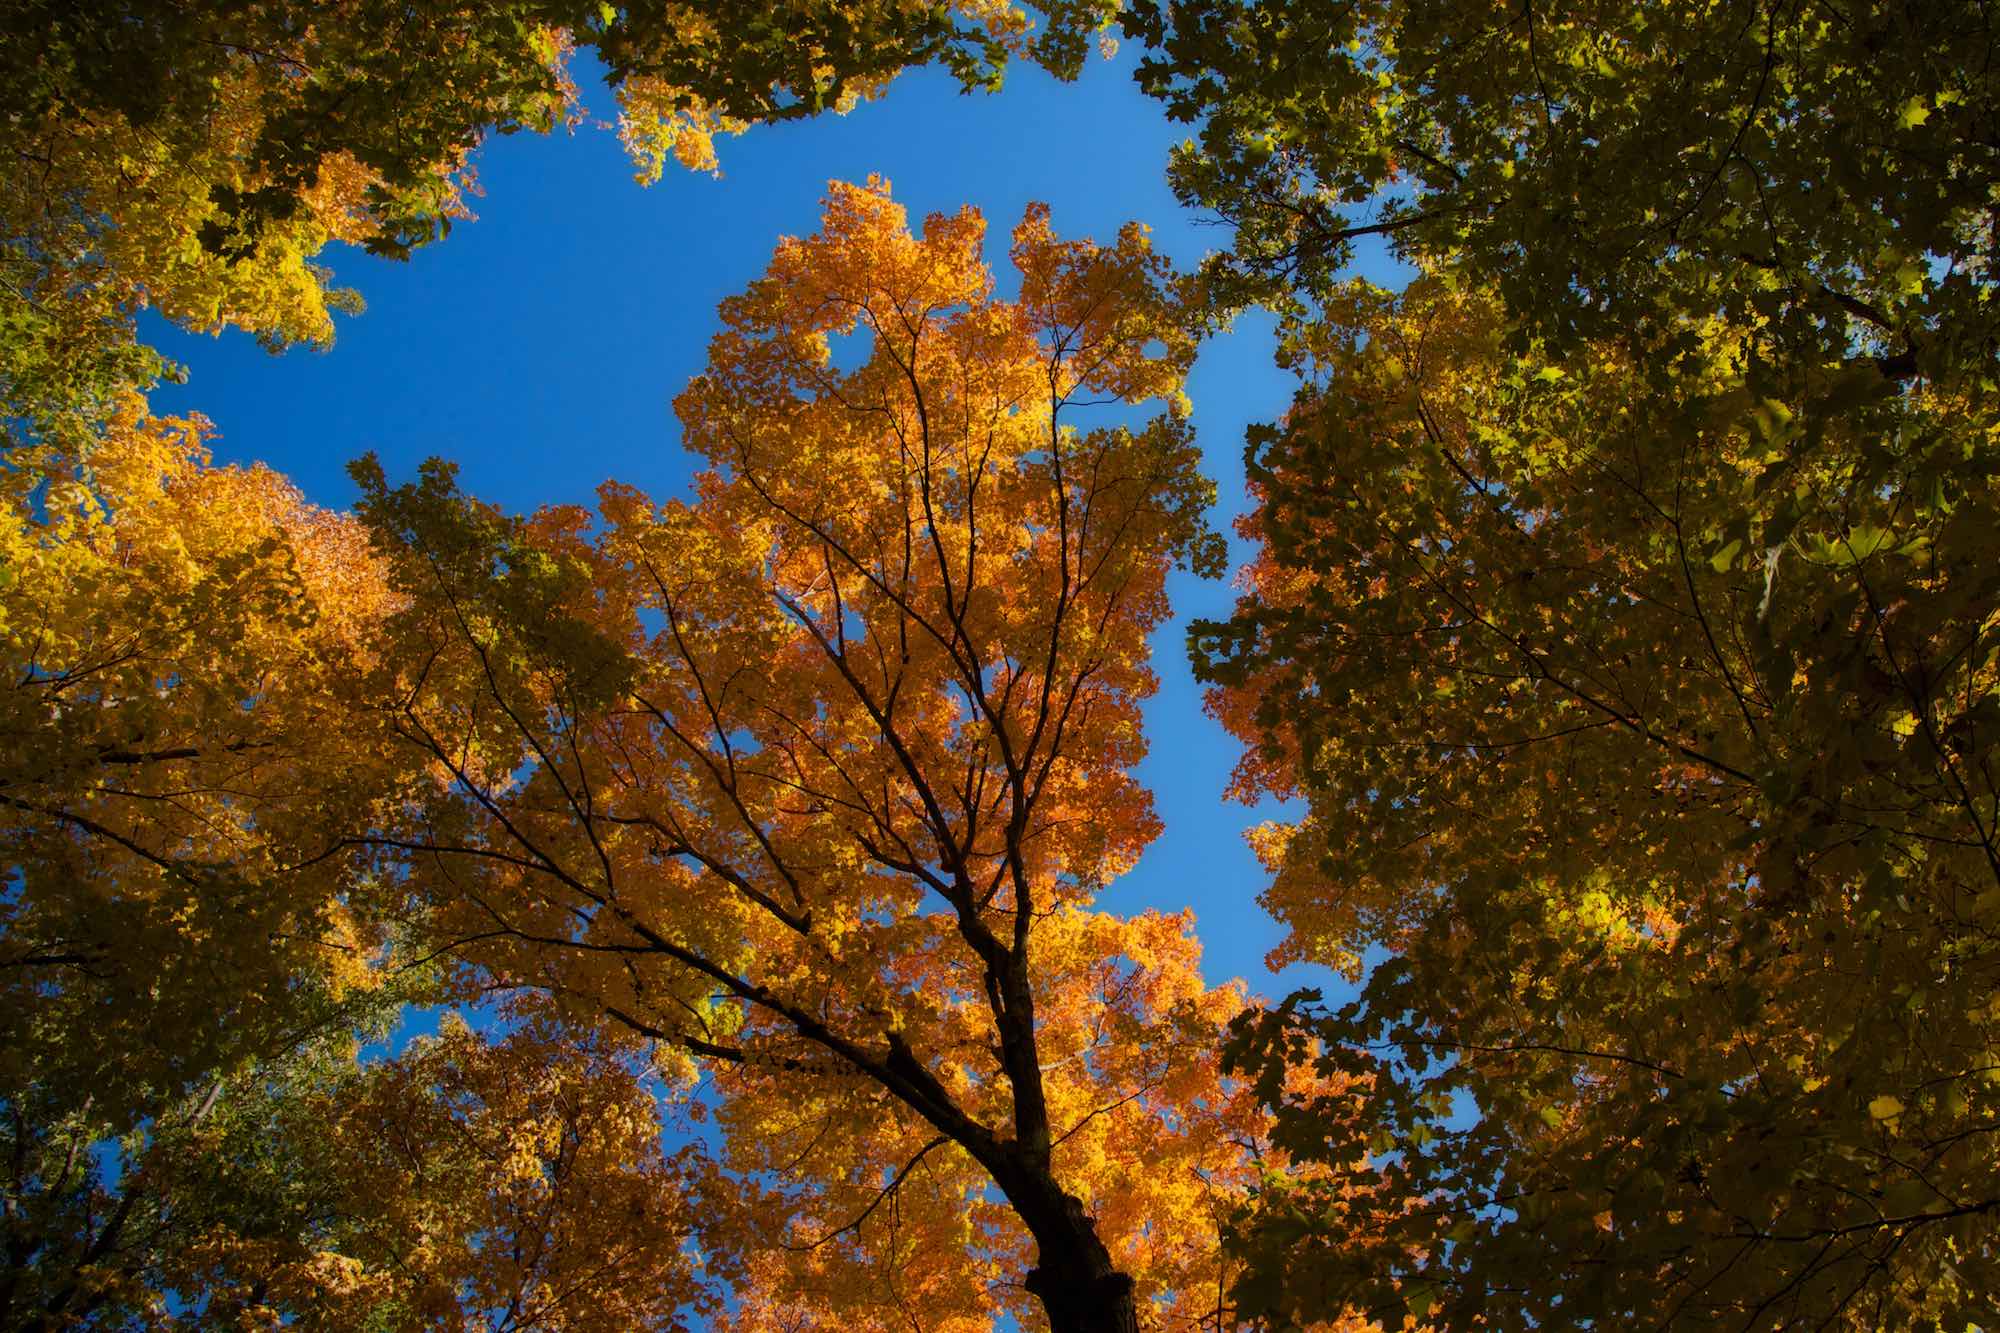 Fall canopy